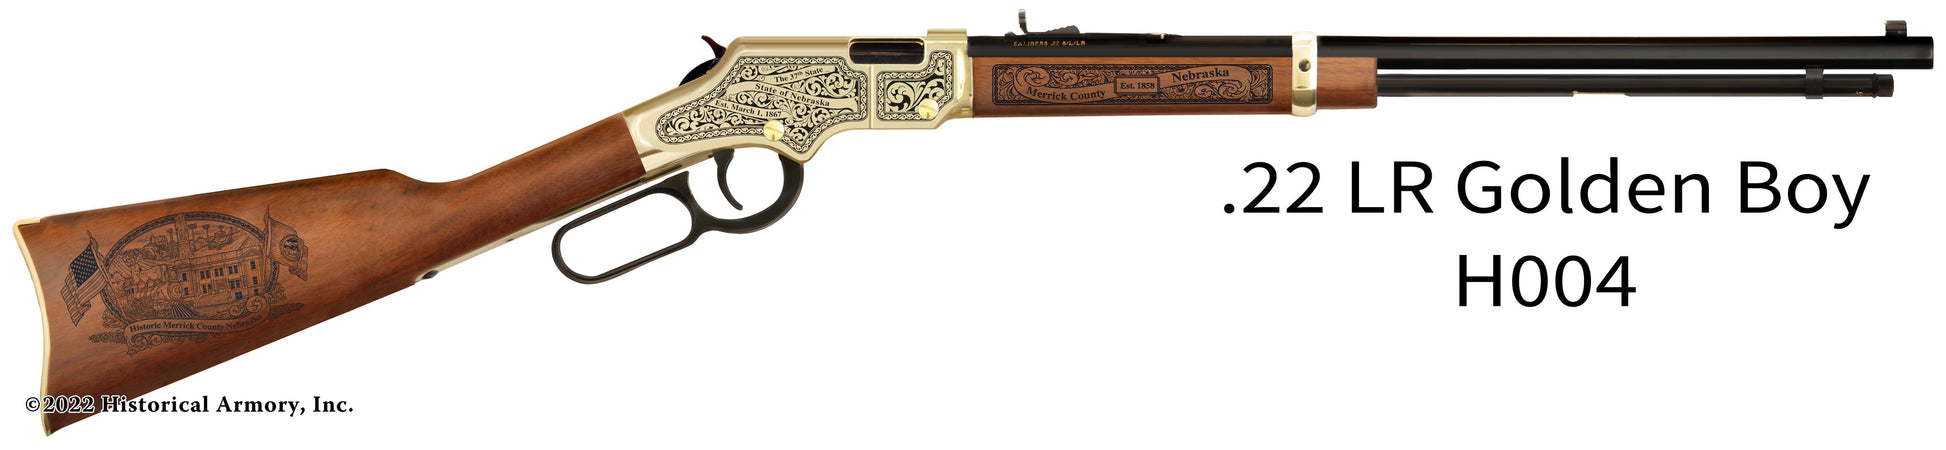 Merrick County Nebraska Engraved Henry Golden Boy Rifle